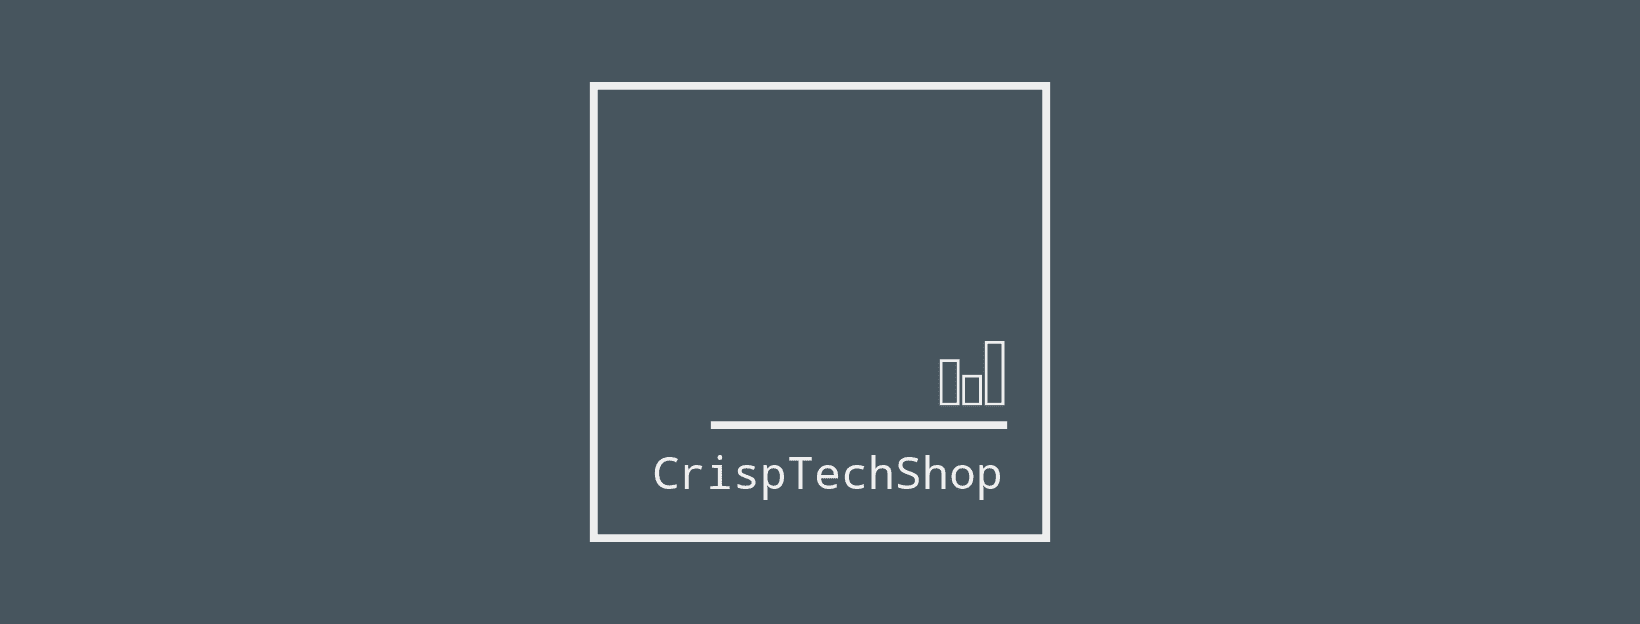 CrispTechShop